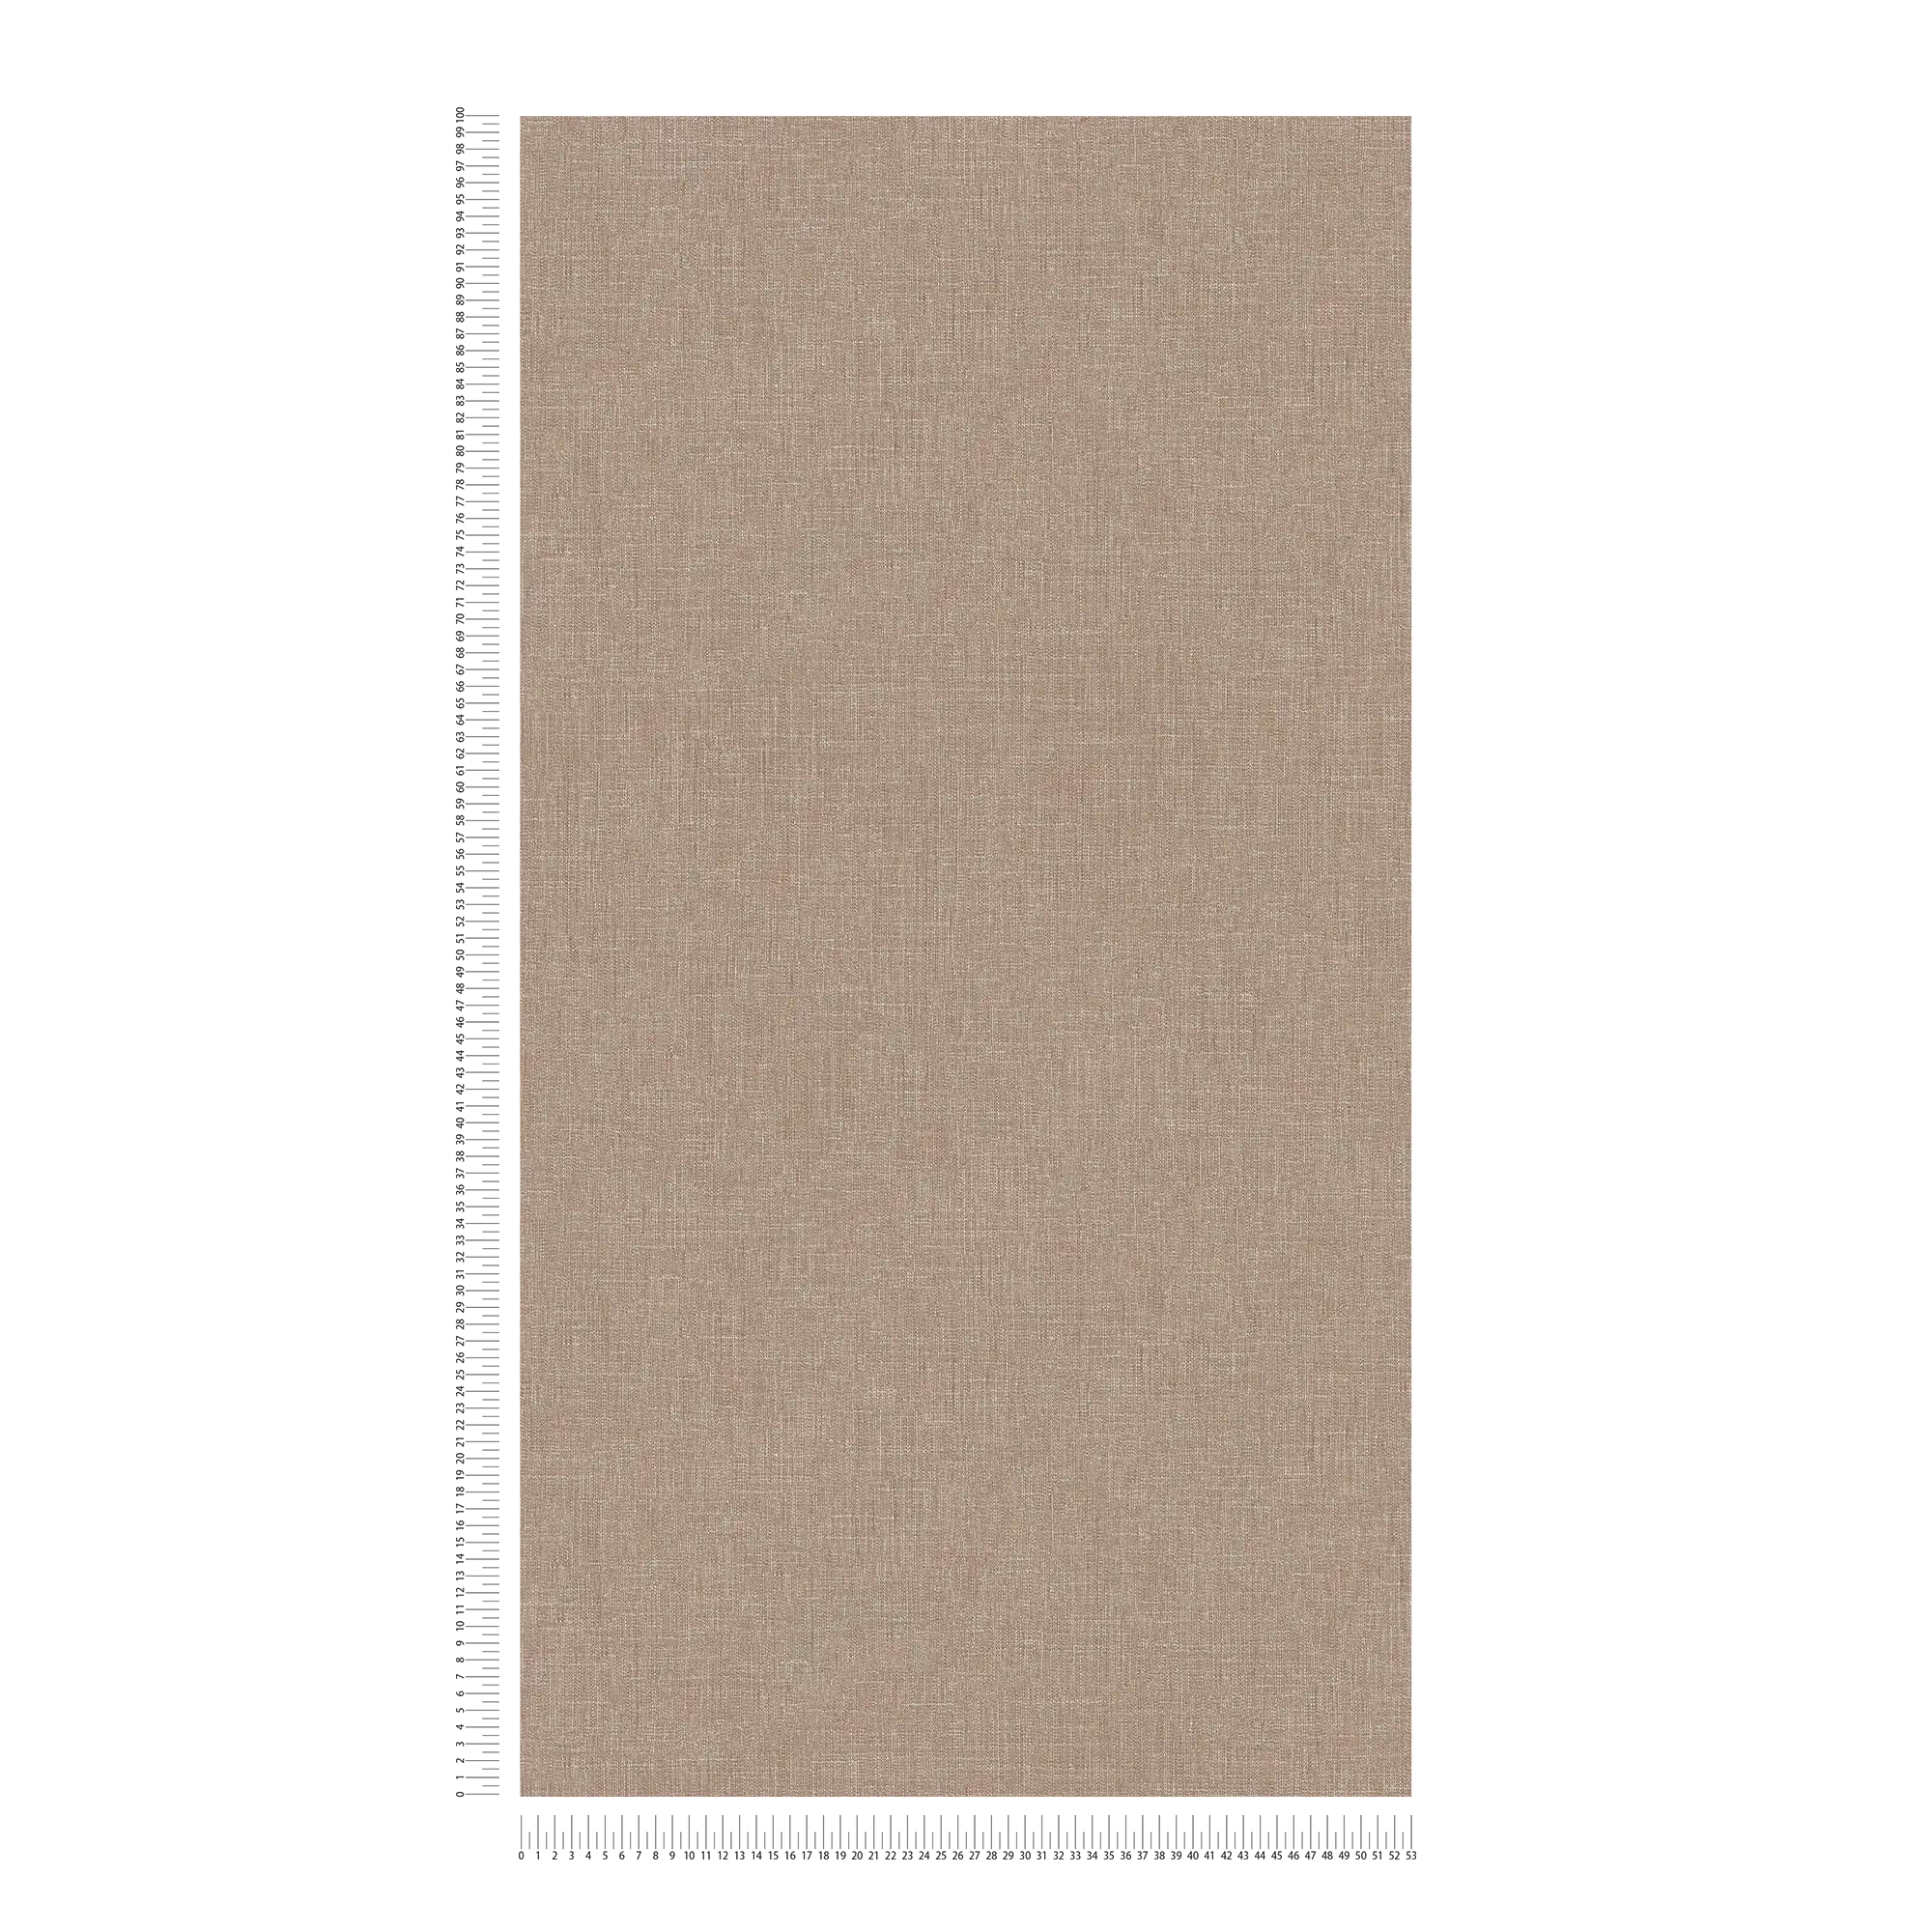             Carta da parati effetto lino marrone screziato con struttura tessile
        